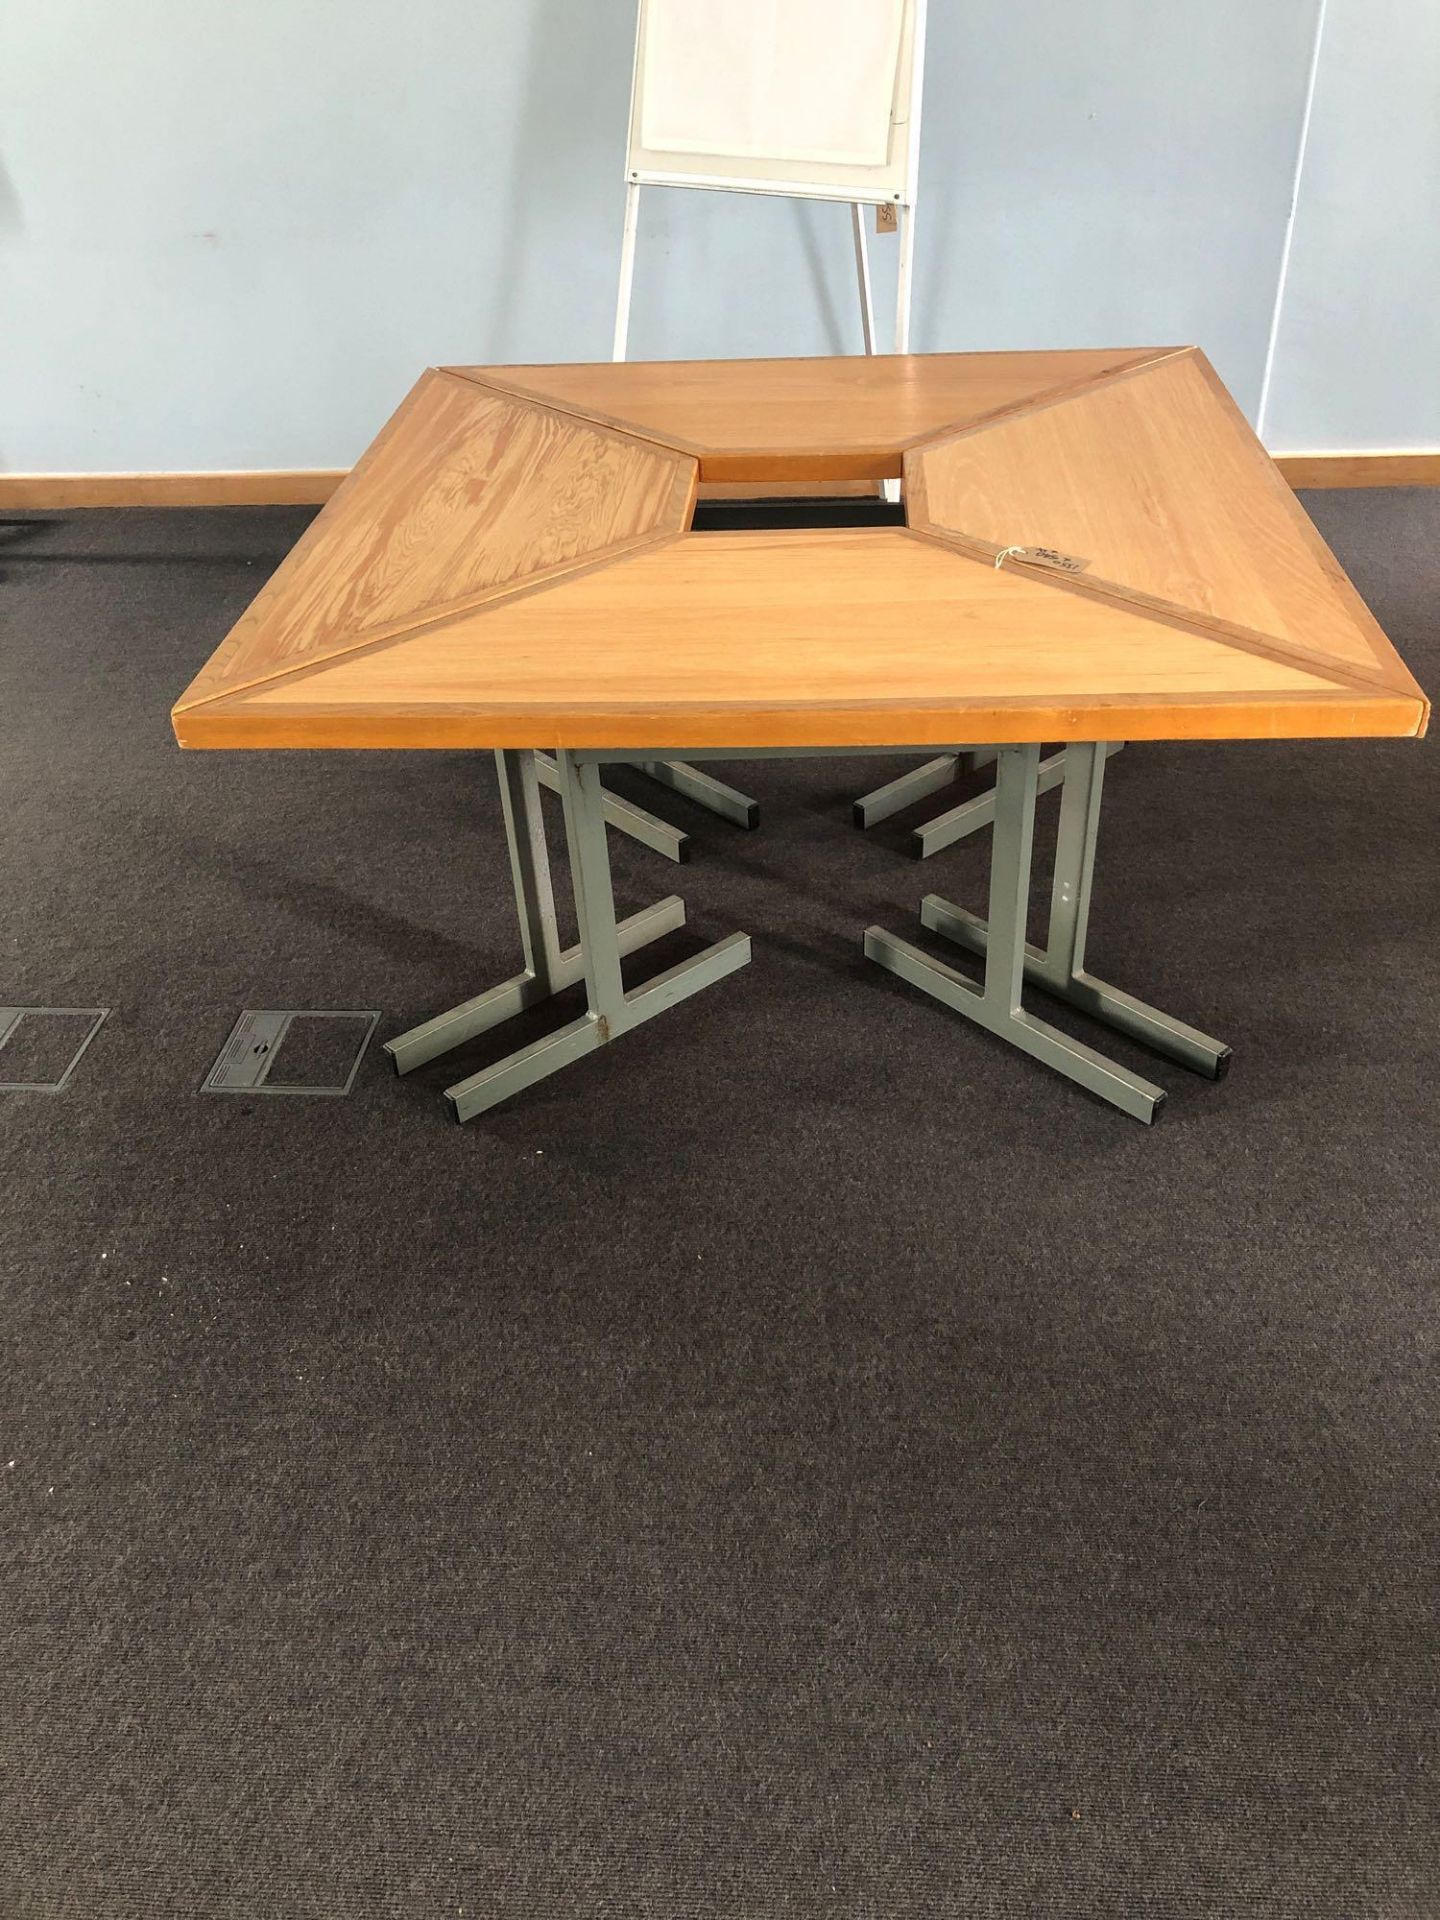 4 x Mas Furniture Contractors Ltd Conference Tables 1350 x 540 Mm